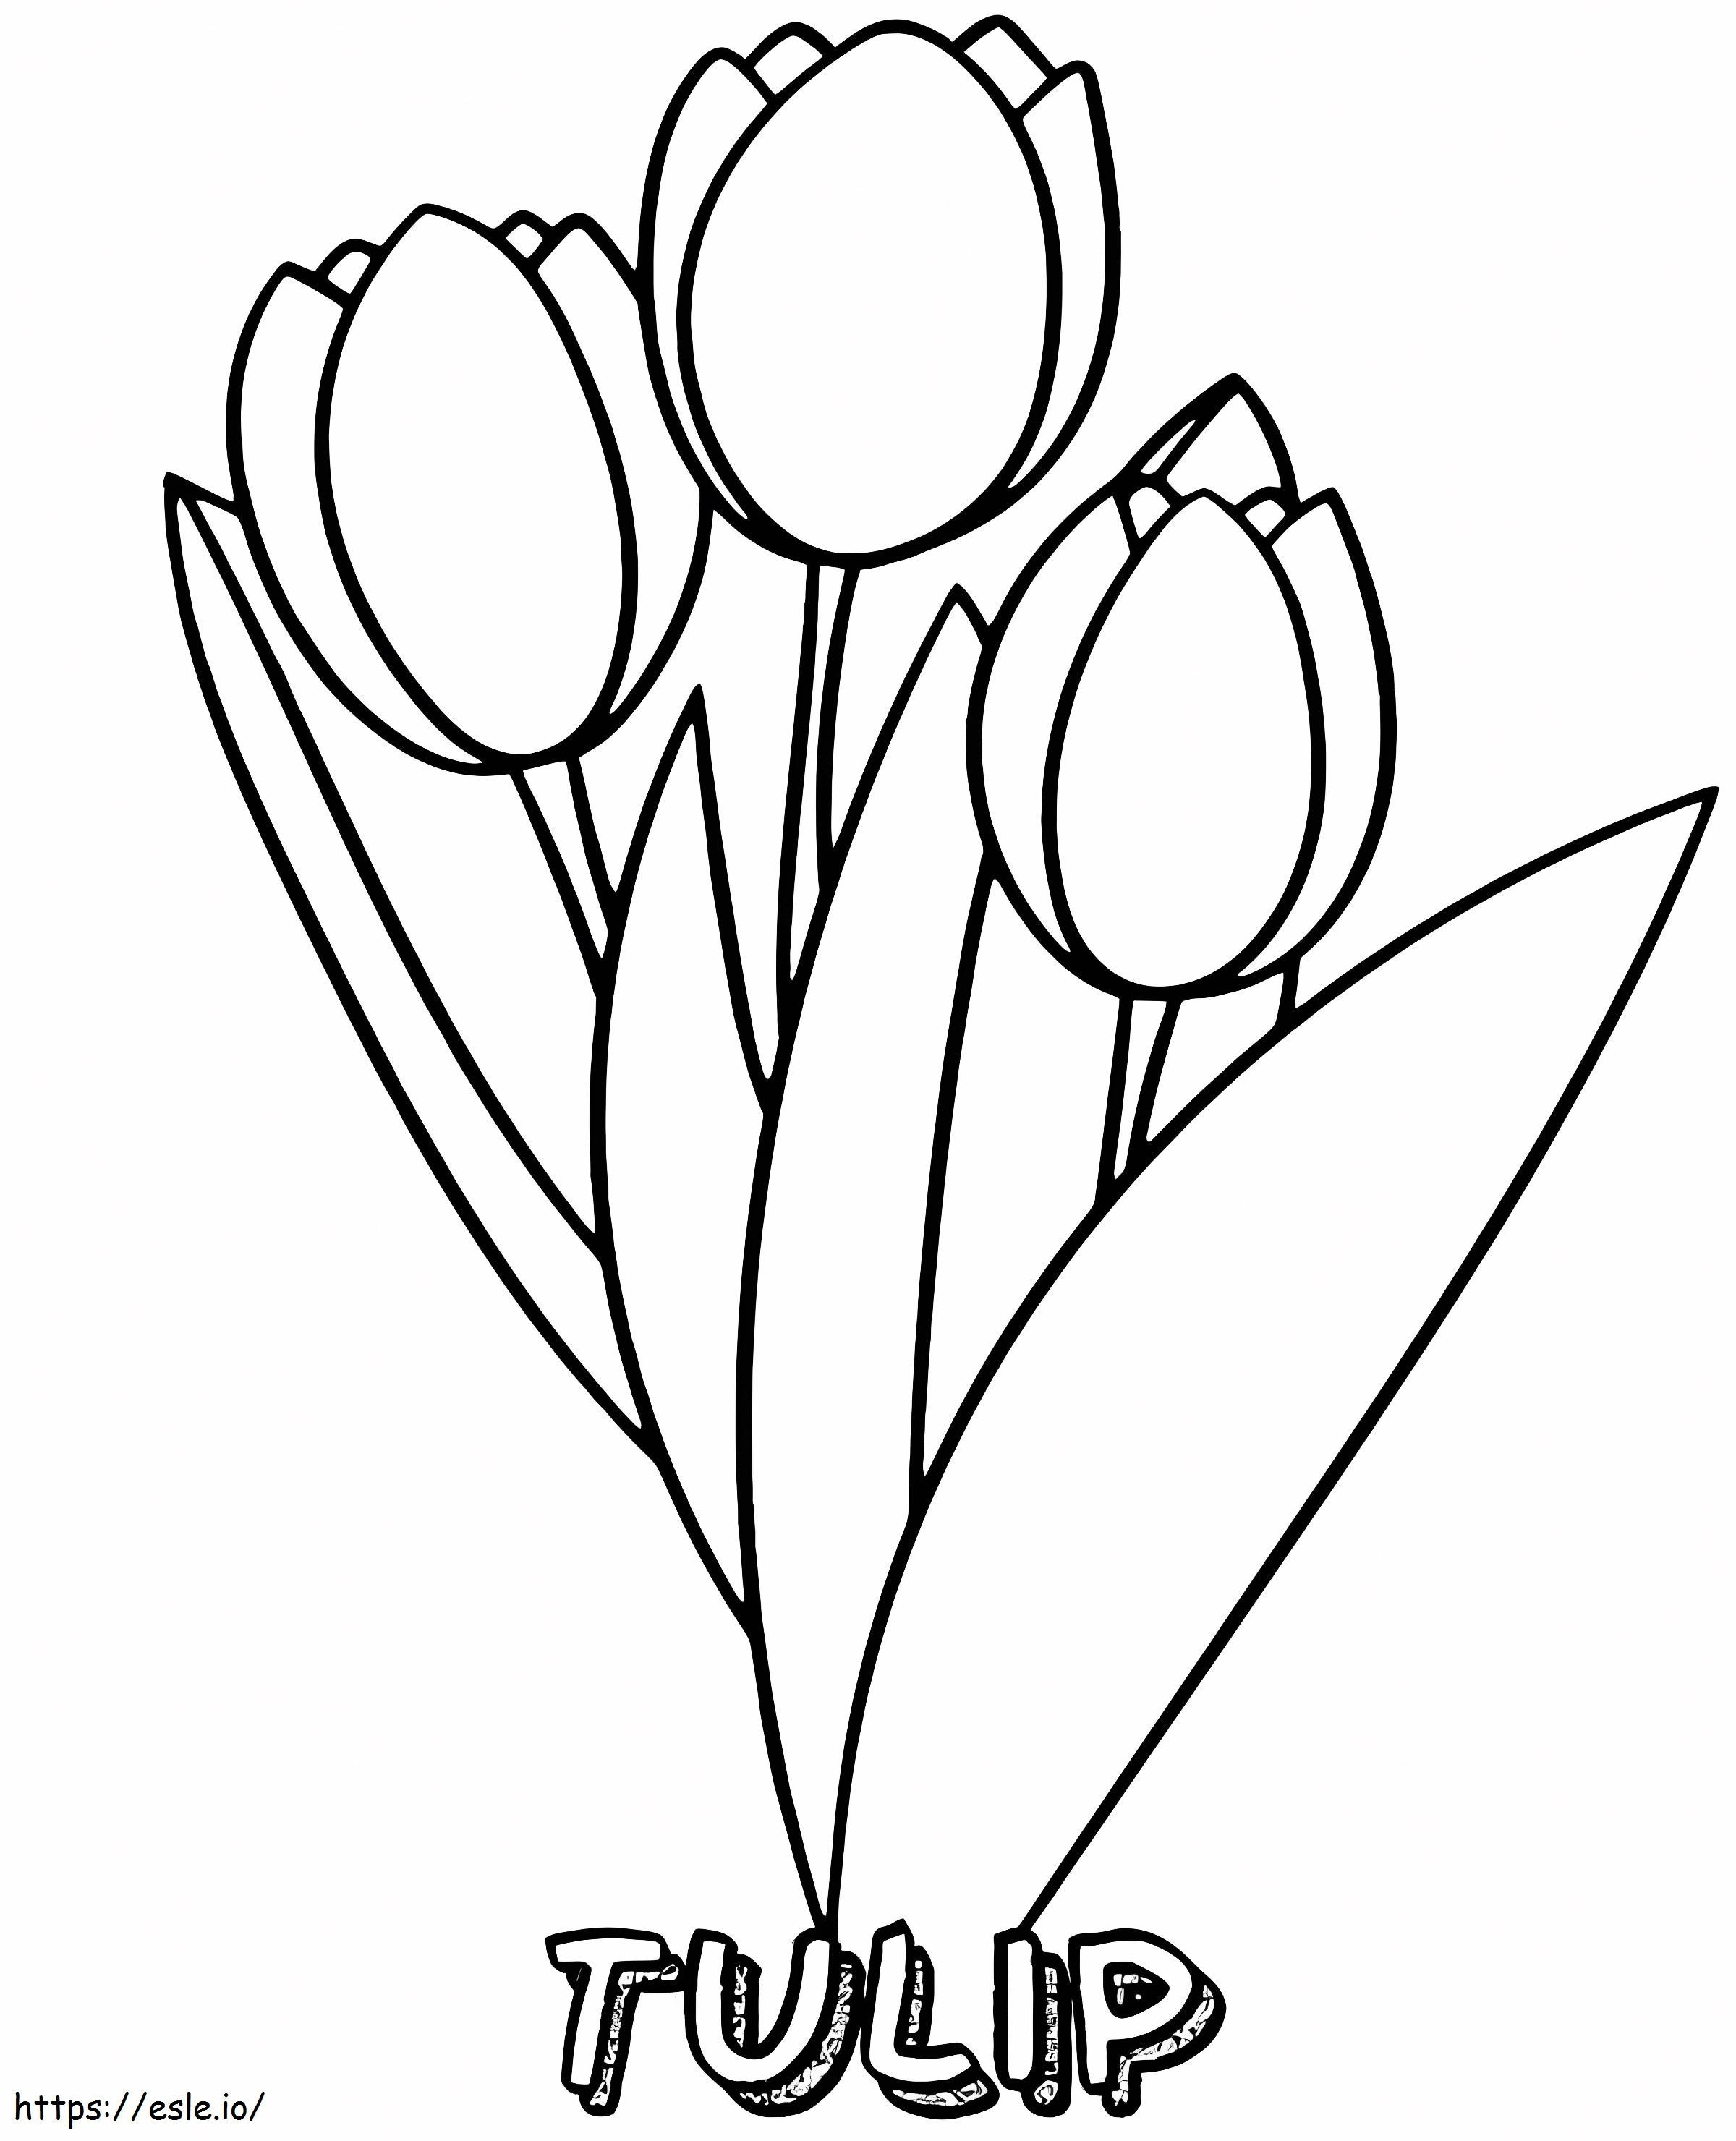 Einfache Tulpe ausmalbilder